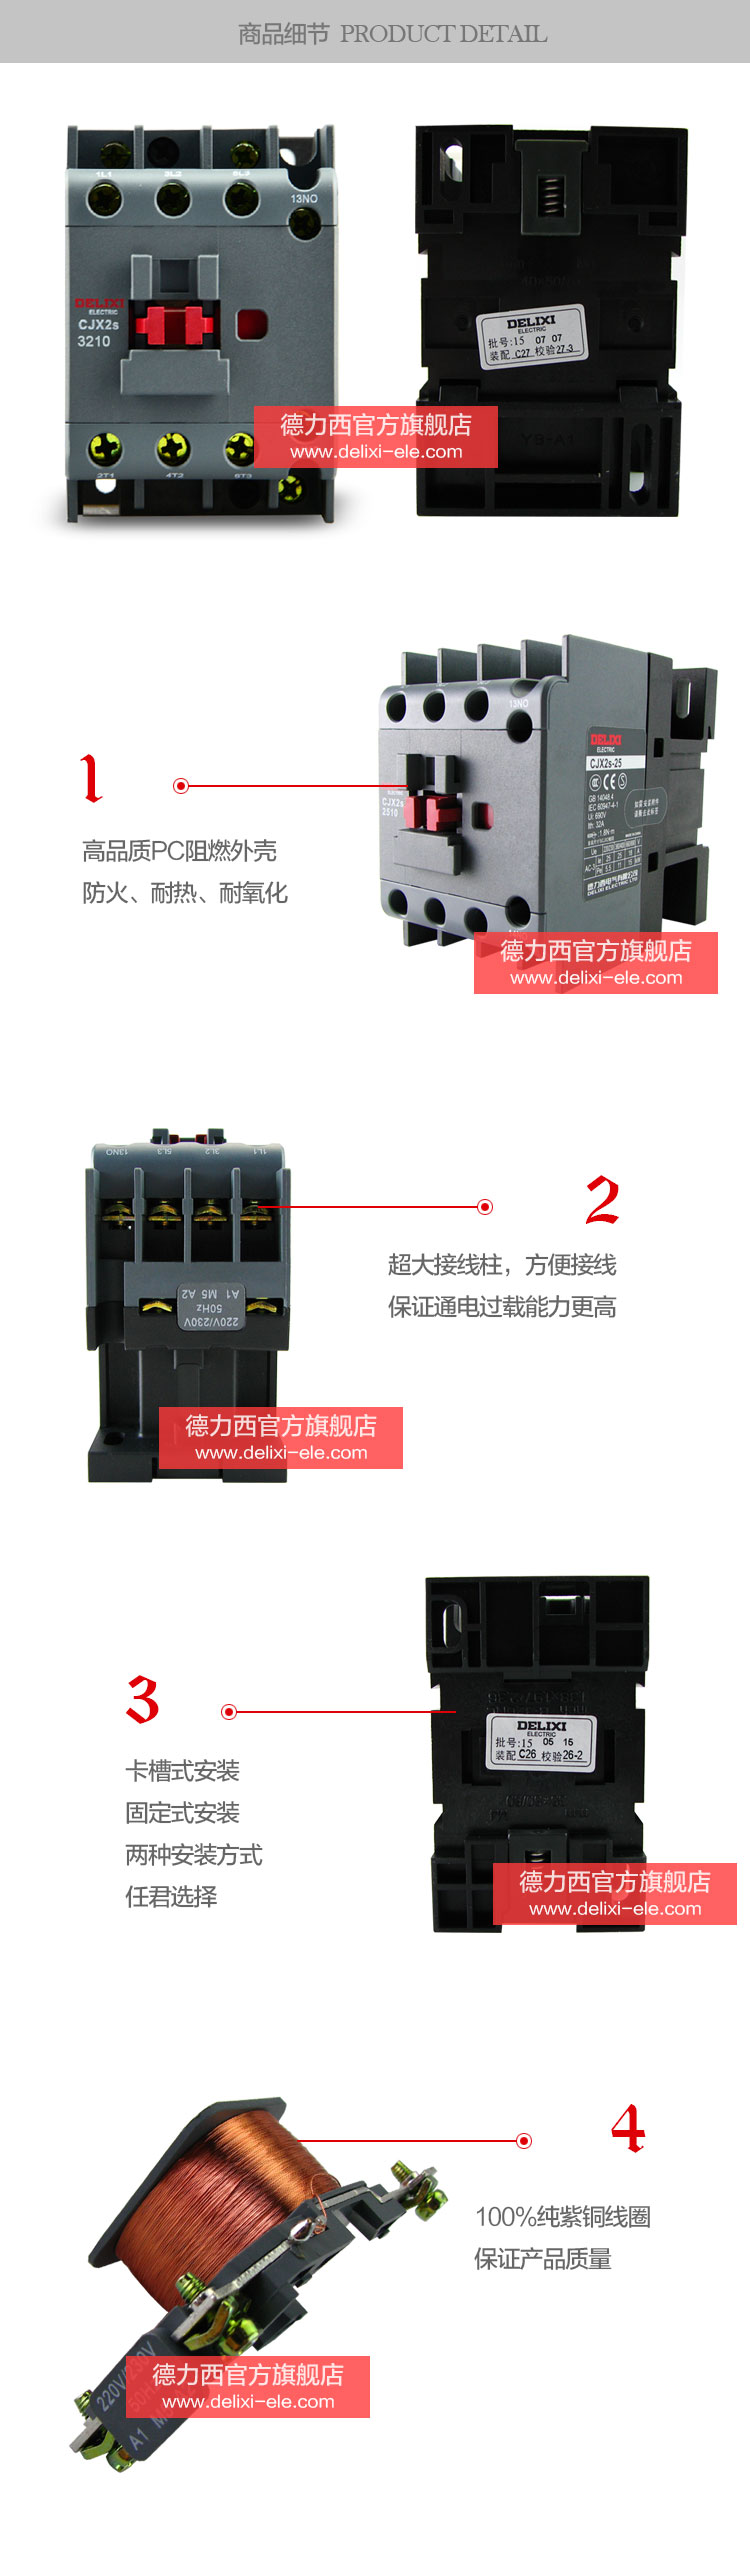 德力西交流接触器CJX2S-3210/CJX2S-3201 产品特点 高品质PC阻燃材料 耐火耐氧化，超大接线柱方便接线，卡槽式安装方式和100%纯铜线圈